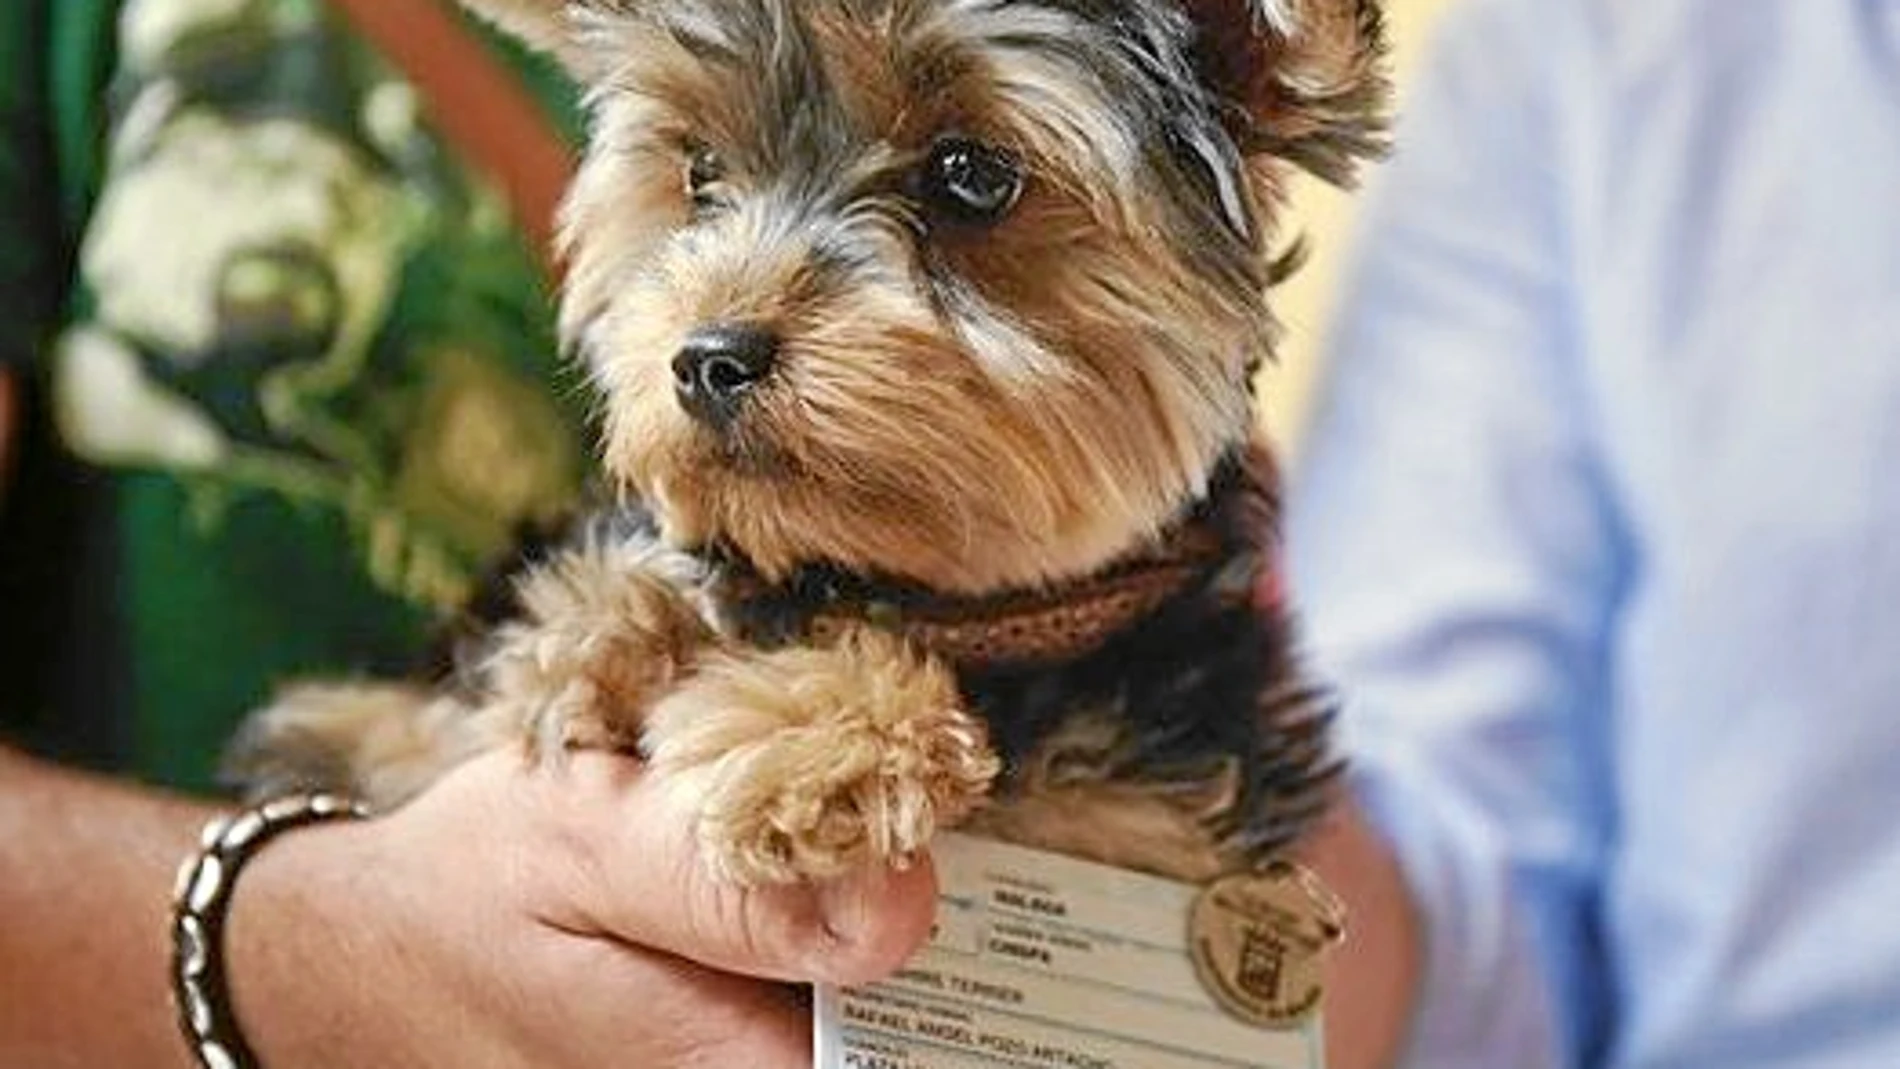 Uno de los perros malagueños que cuenta con su propio carnet de identidad y forma parte del censo canino obligatorio